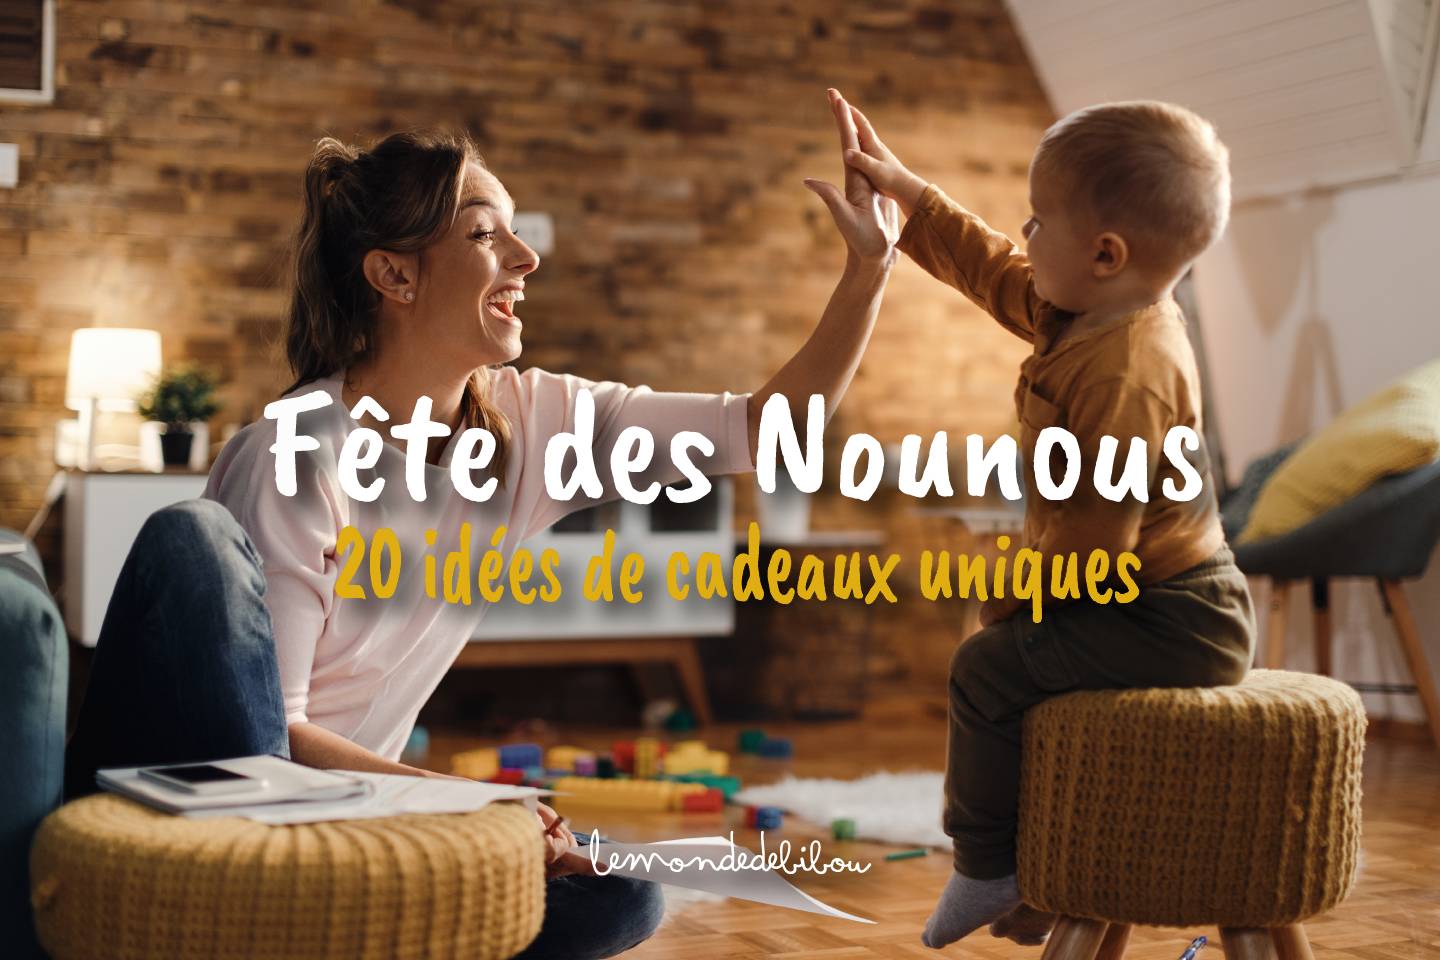 LES DERNIERS ARTICLES -Le Monde de Bibou - Cadeaux personnalisés